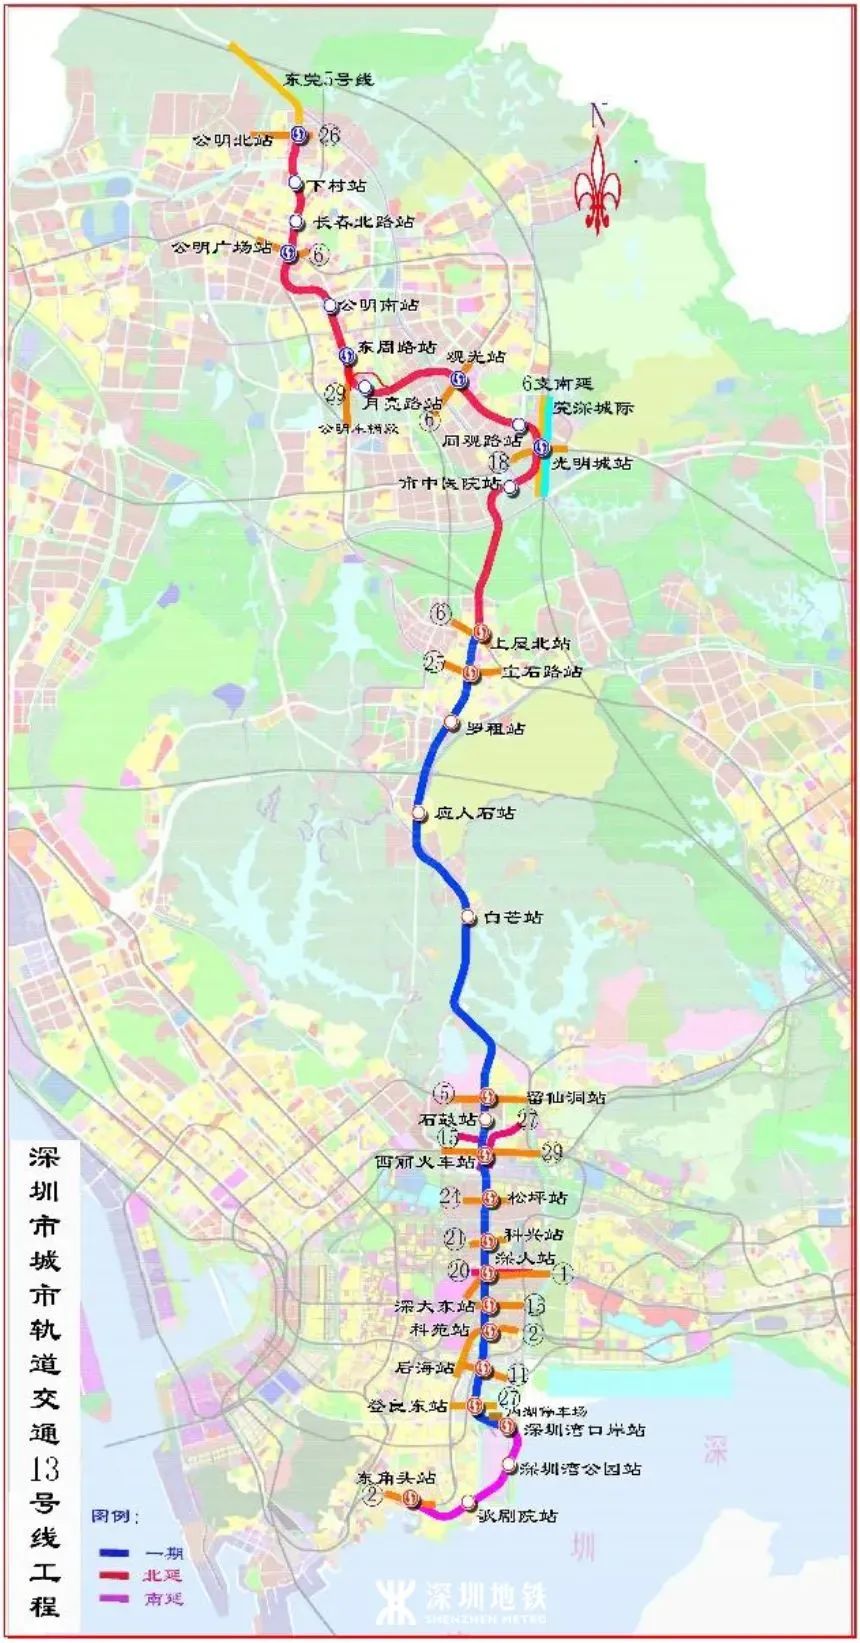 深圳高铁站在哪里 深圳高铁路线分布图